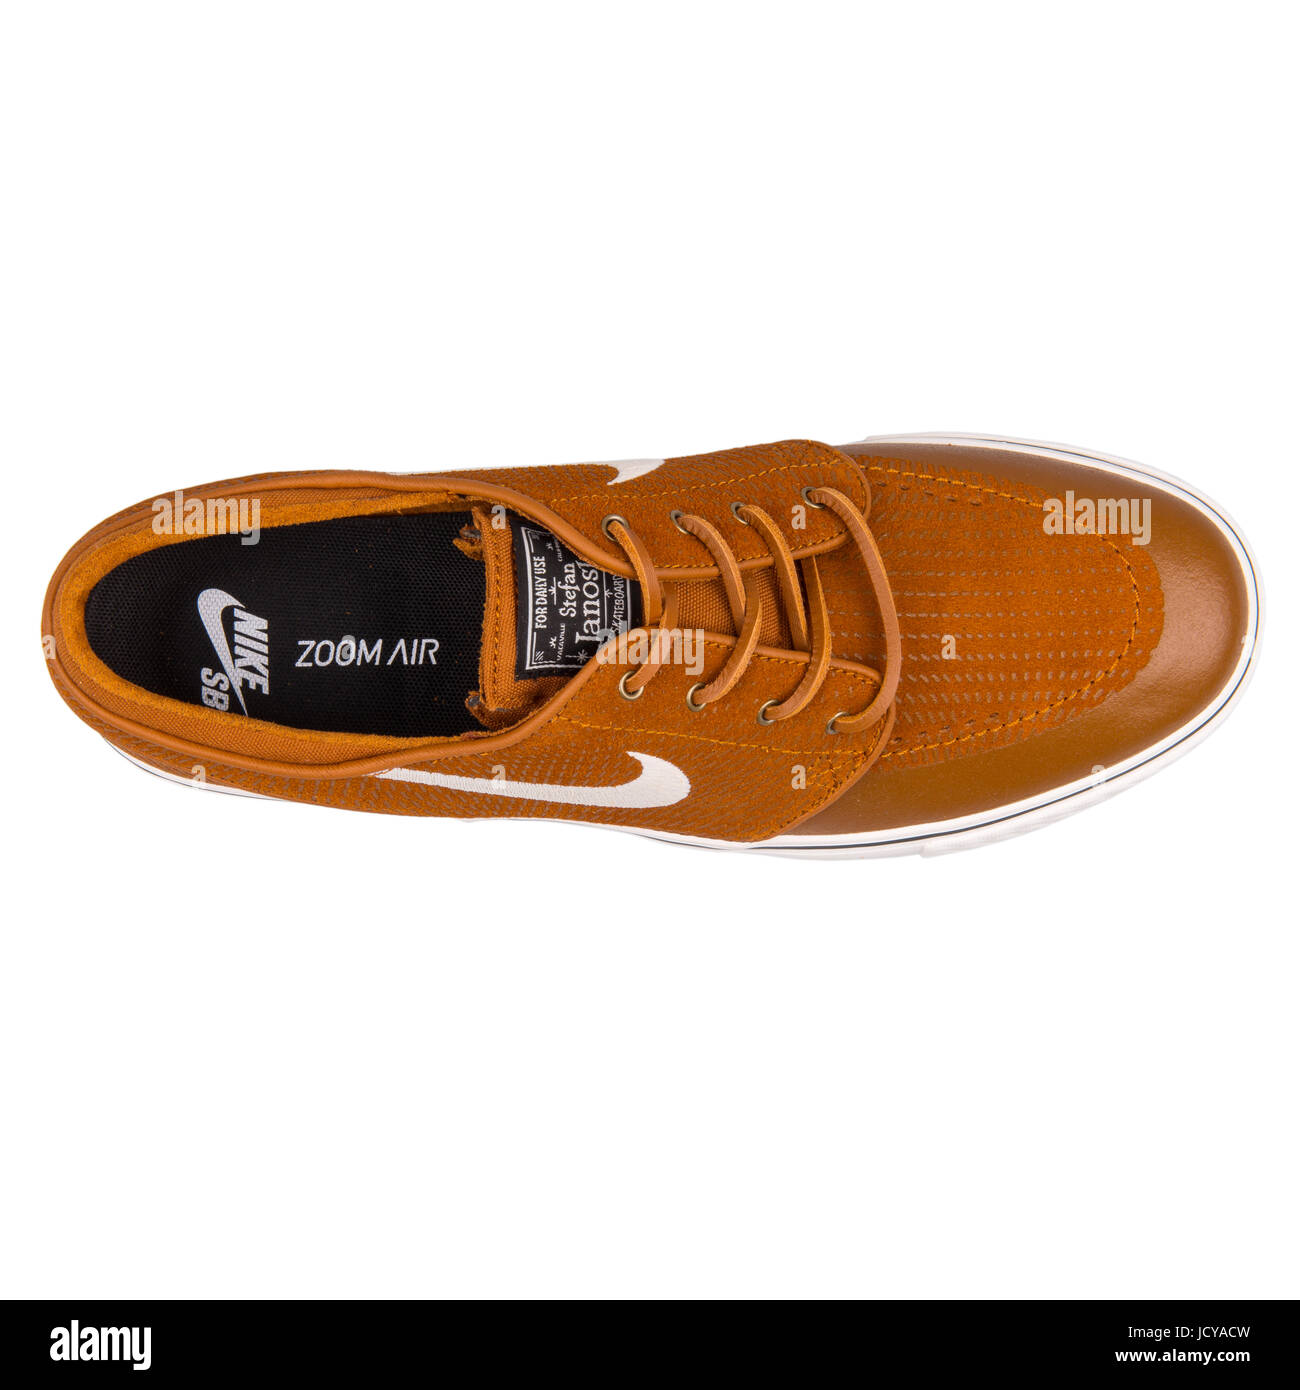 Nike Zoom Stefan Janoski PR SE braun Skateboarding Schuhe für Herren -  631298-211 Stockfotografie - Alamy